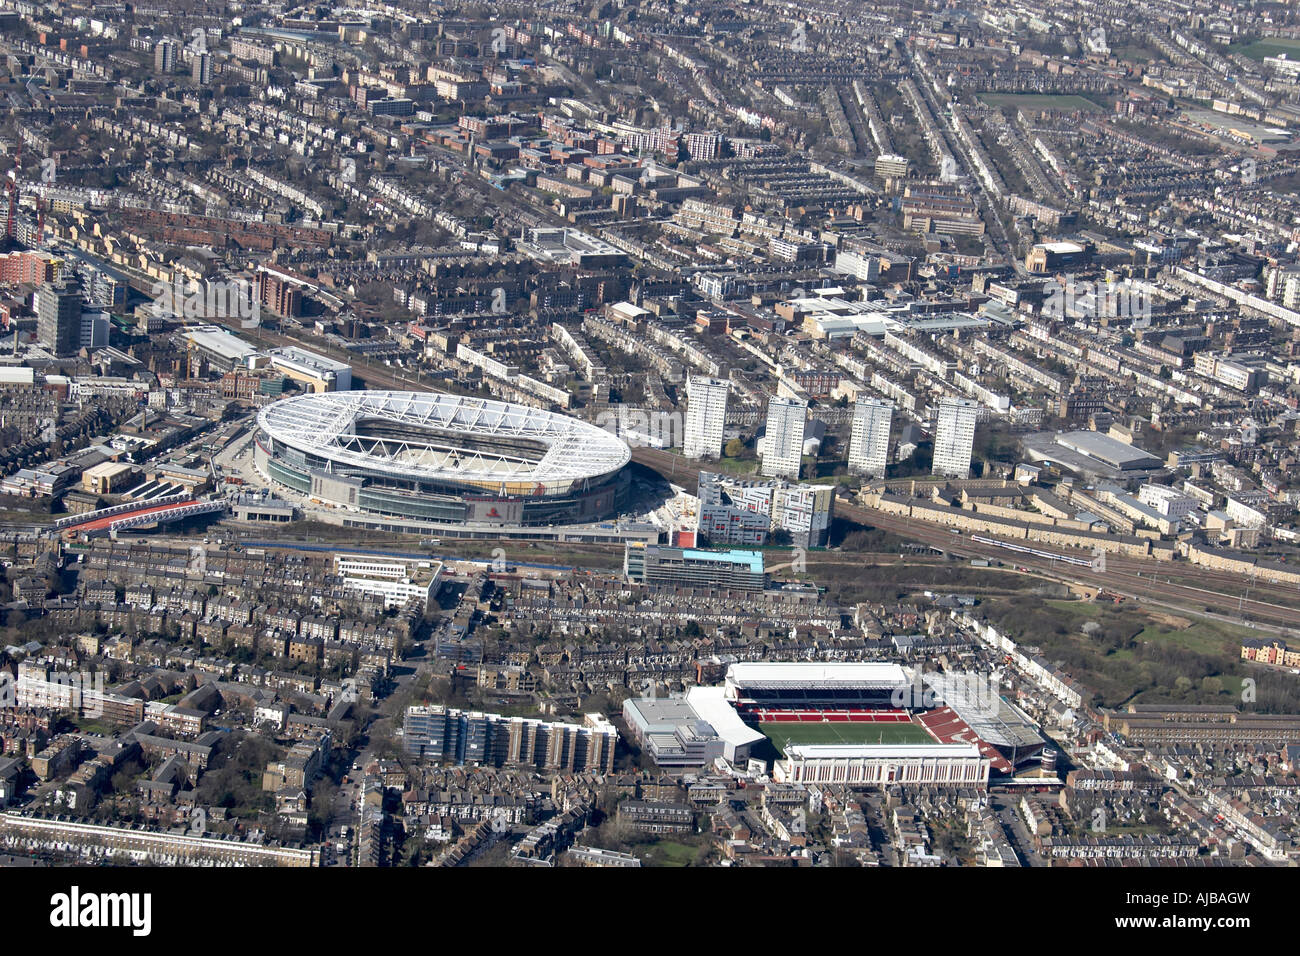 Vista aerea a sud-ovest di Emirates Stadium e Arsenal Football Massa alloggiamento suburbana Holloway London N5 N6 N7 REGNO UNITO ad alto livello Foto Stock